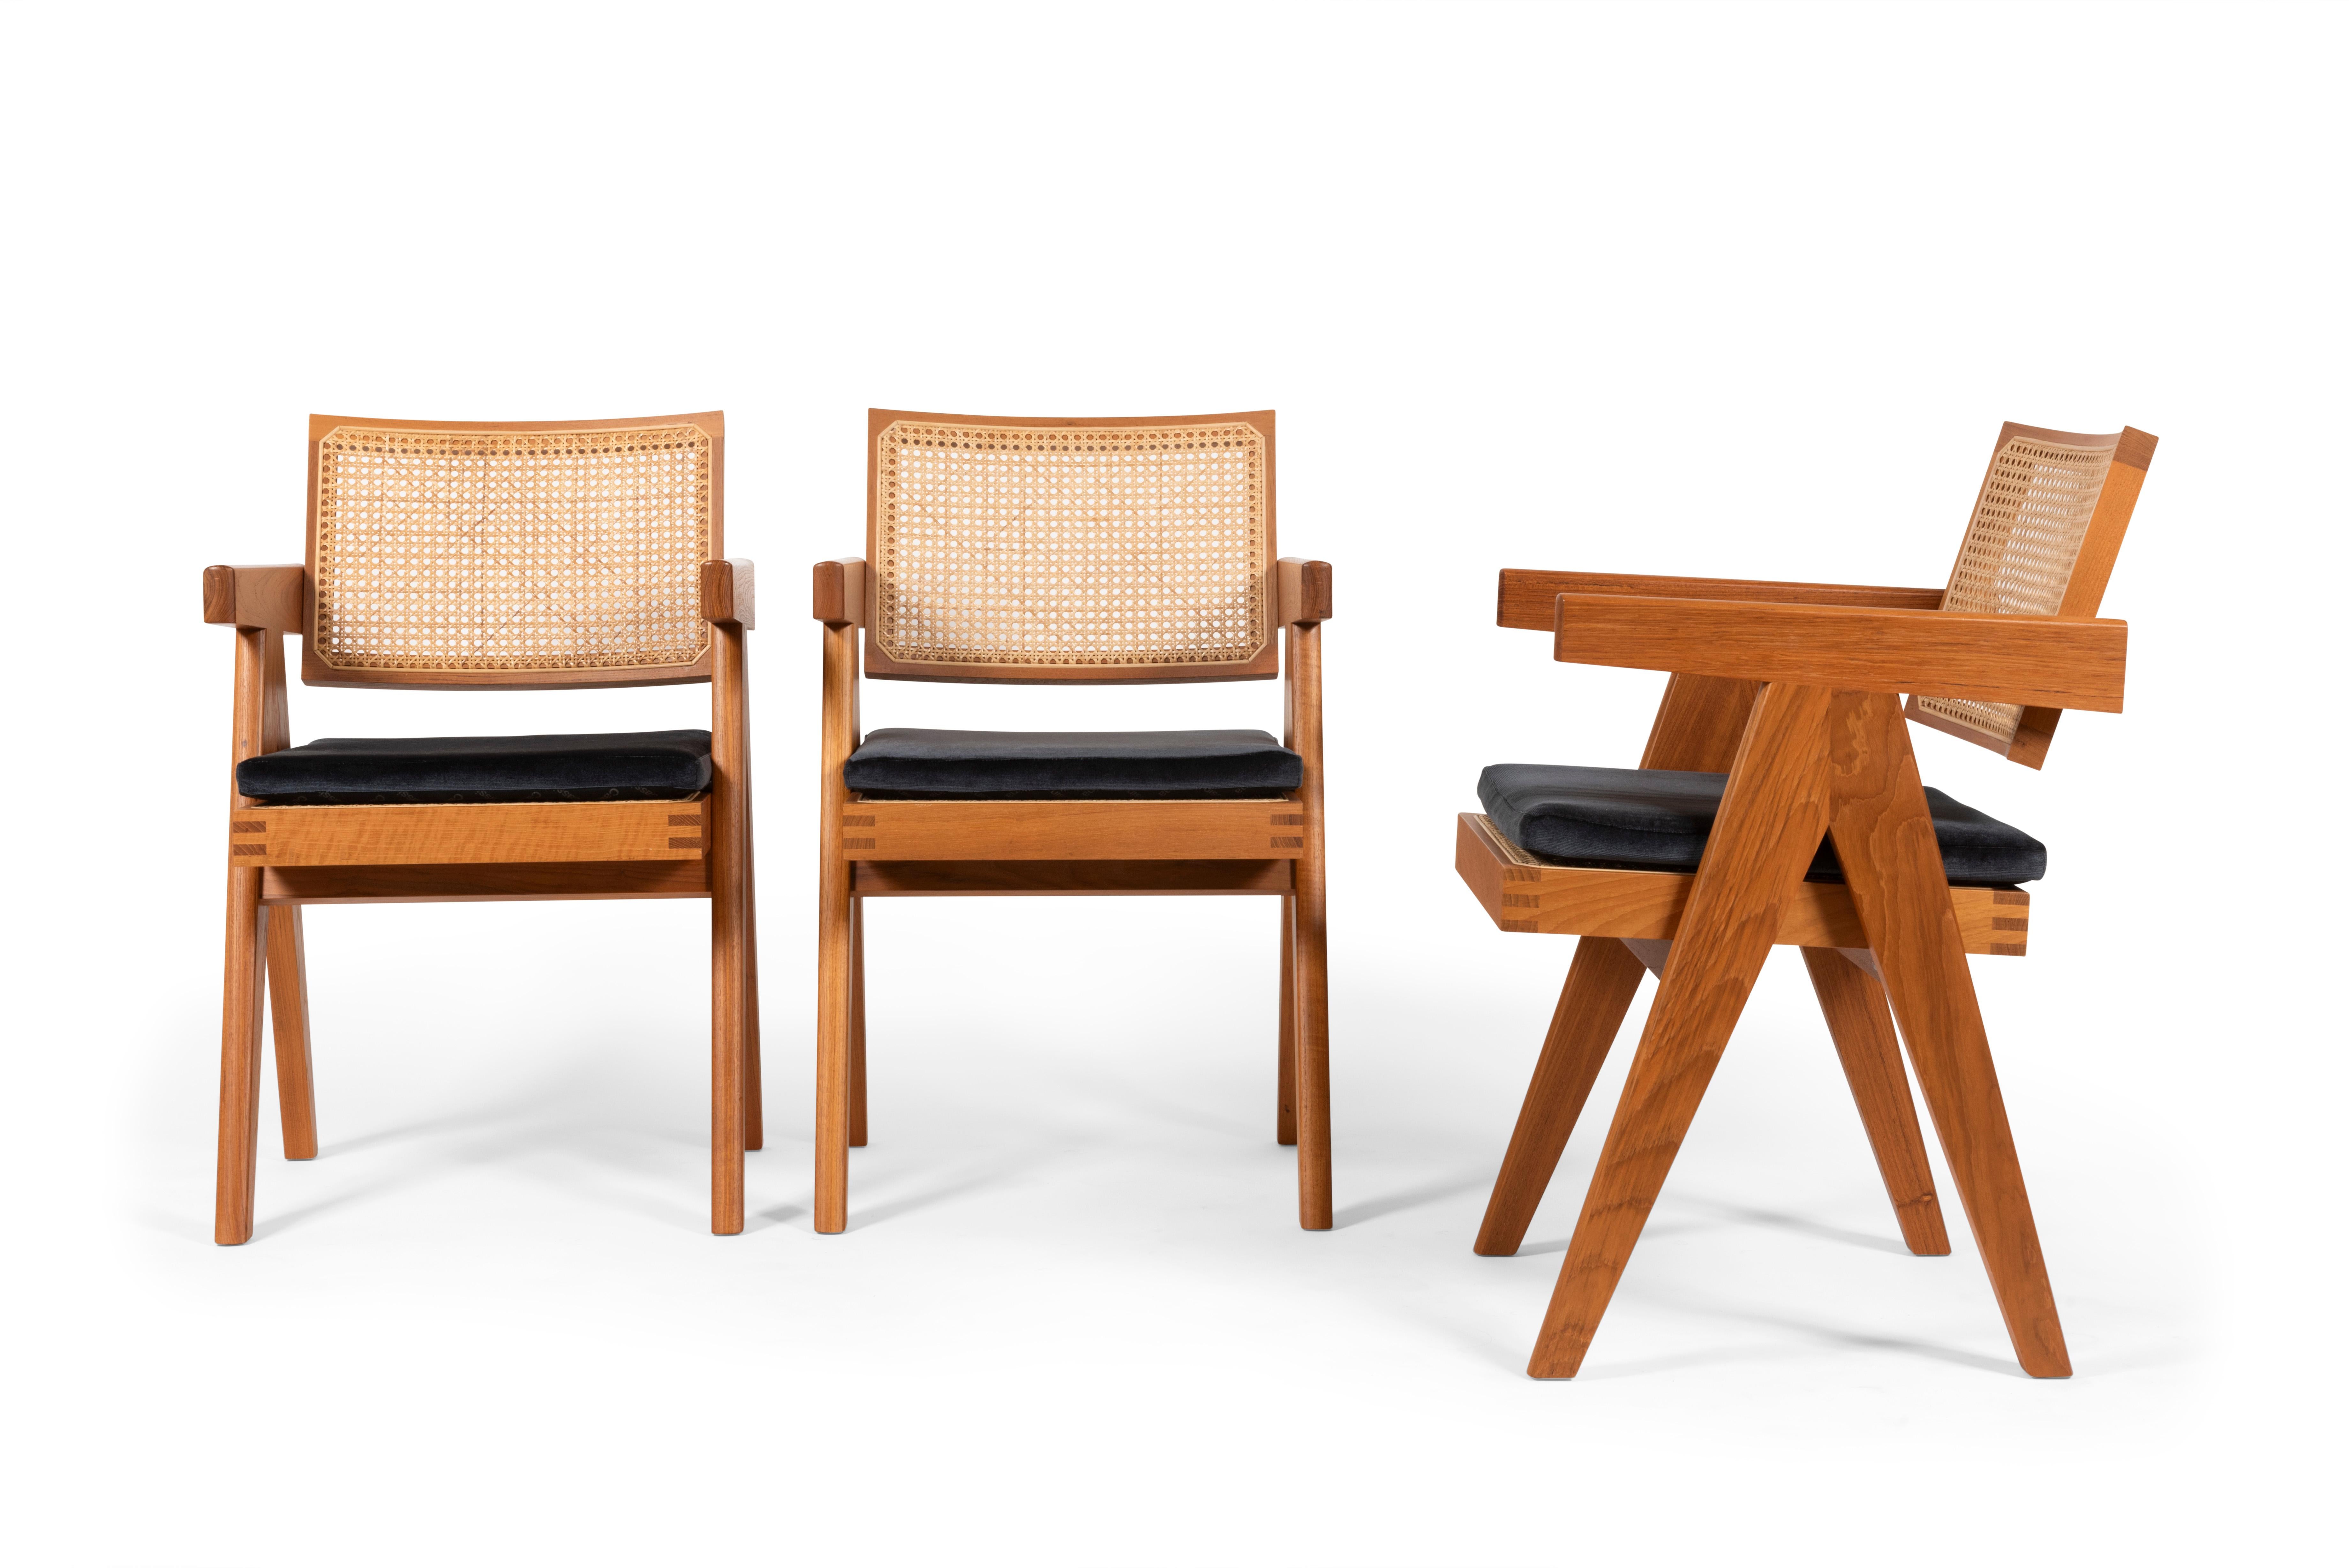 Ensemble de 3 chaises conçues par Pierre Jeanneret vers 1950, relancées en 2019 par Cassina, Italie.

La chaise “051” est en teck de Birmanie avec un cannage réalisé à l’aide d’écorce de rotin.

La structure est constituée d’originaux supports